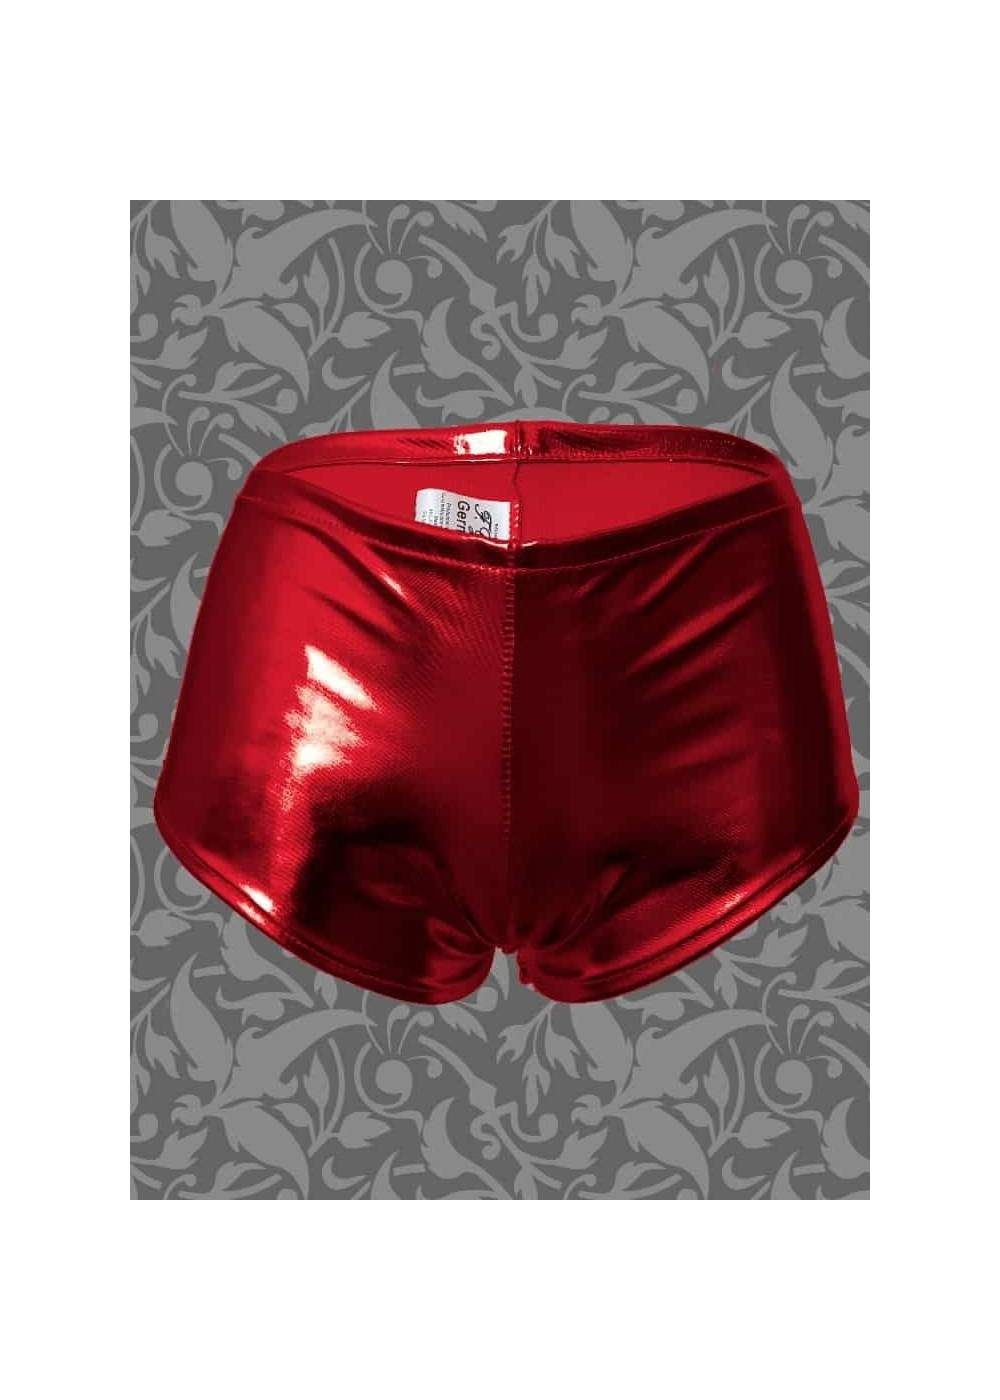 Pantalones cortos de cuero óptico rojo metálico Tallas 34 - 42 - 